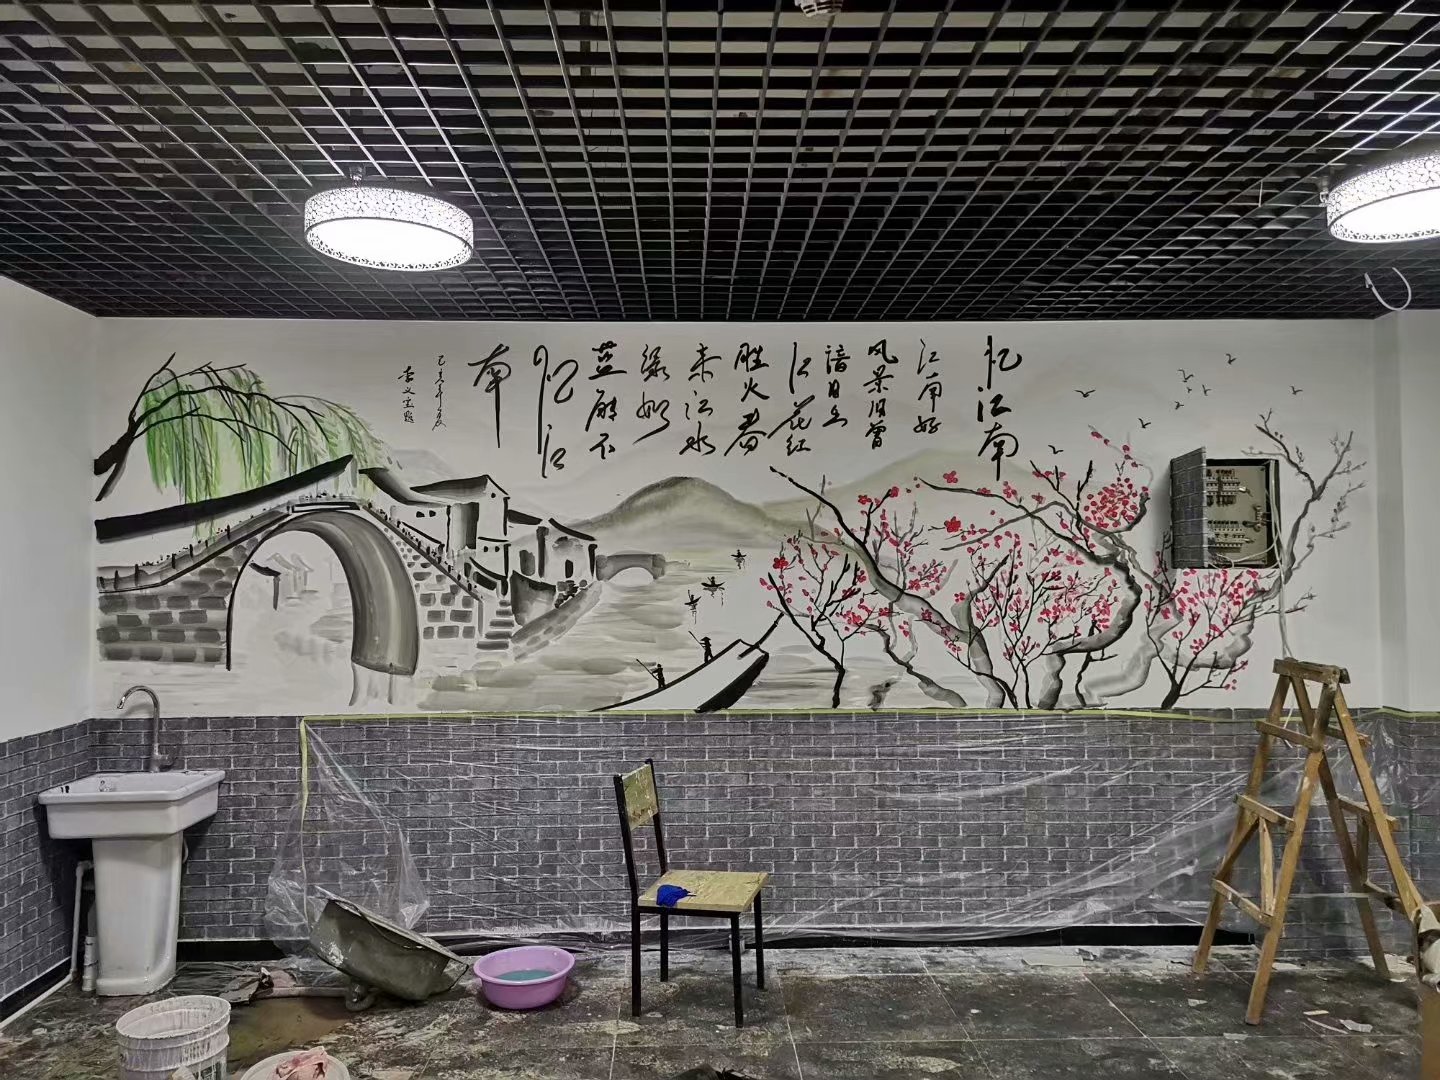 南昌餐厅手绘画,南昌画画涂鸦,南昌墙画彩绘,南昌墙体绘画公司